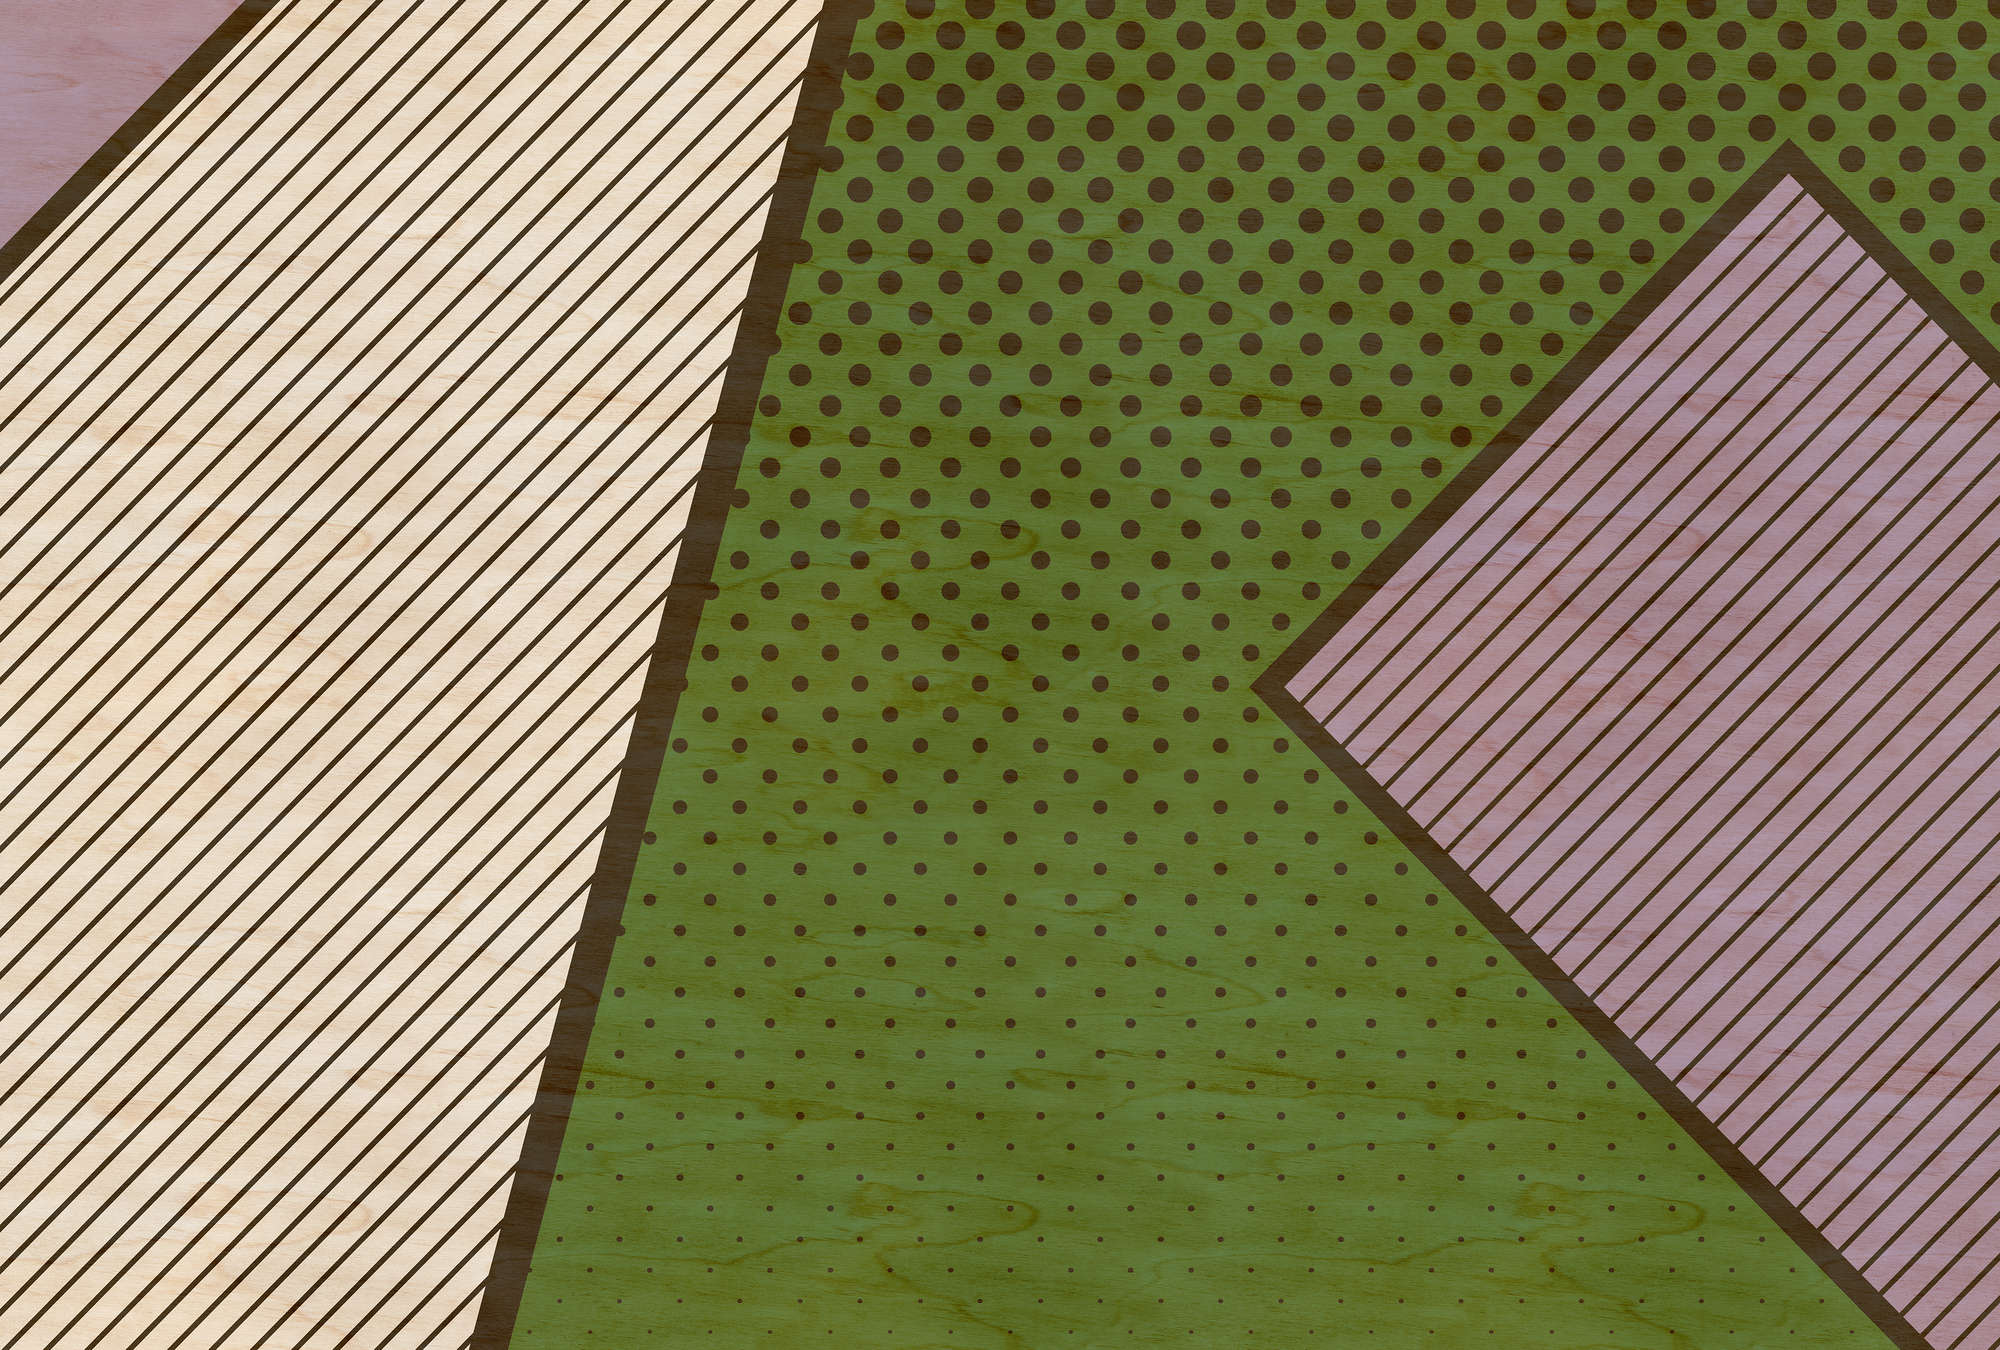             Bird gang 3 - Papier peint abstrait à structure contreplaquée avec aplats de couleurs vives - beige, vert | À structure intissé
        